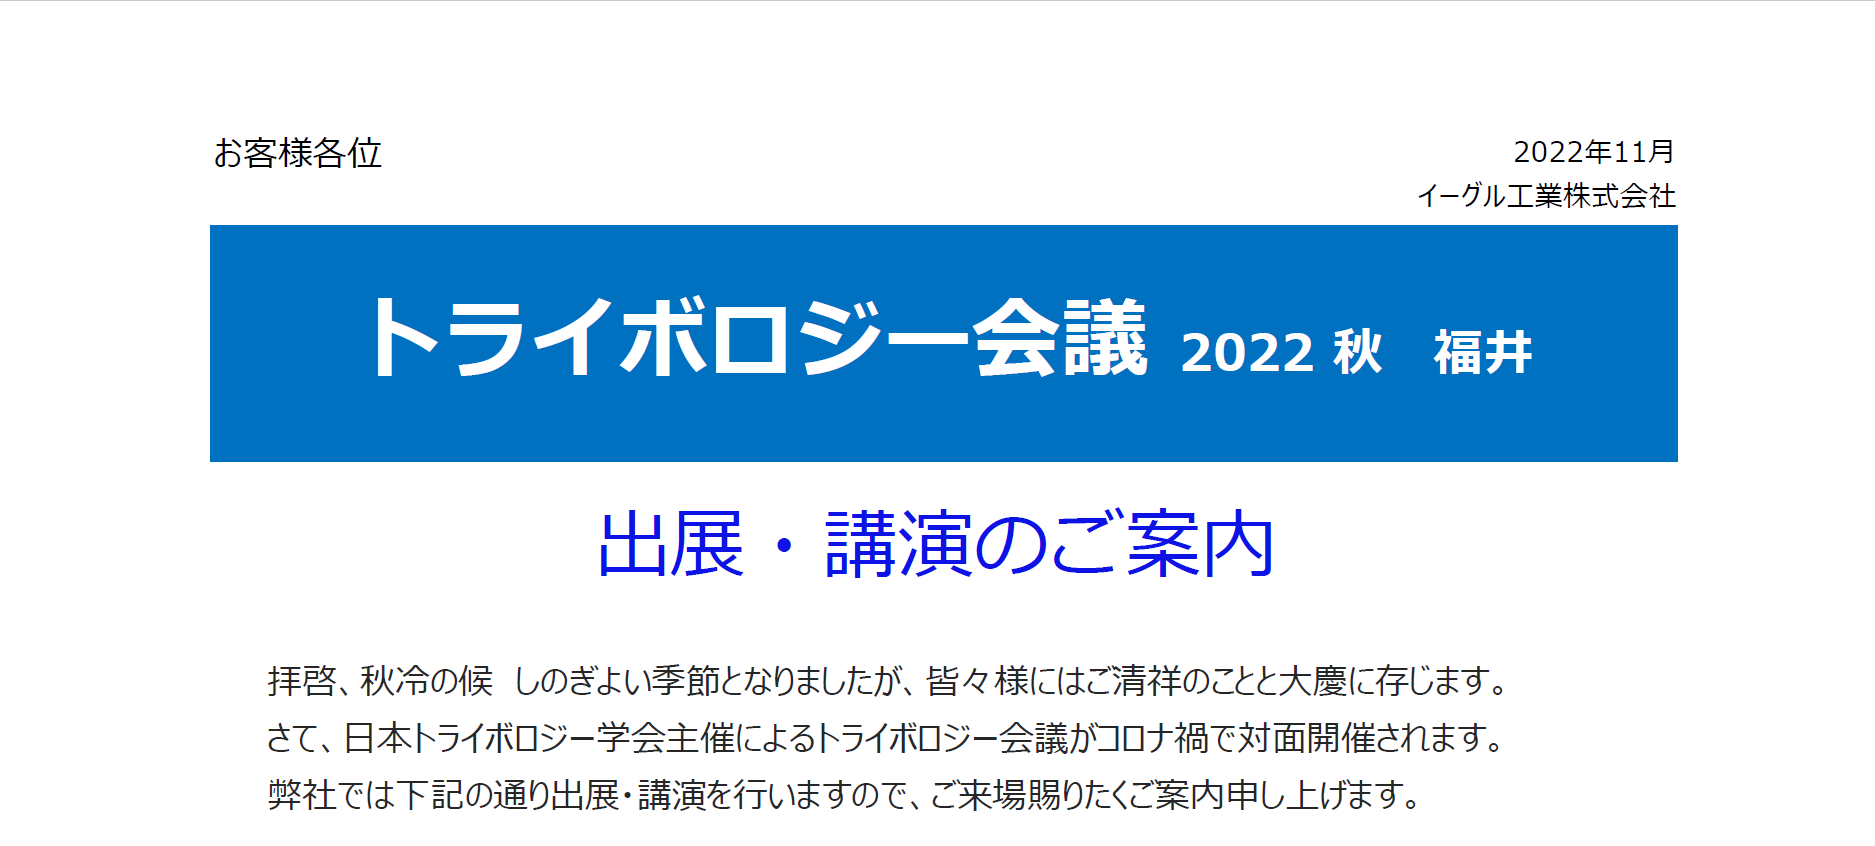 トライボロジー会議 2022 秋 福井　開催のご案内